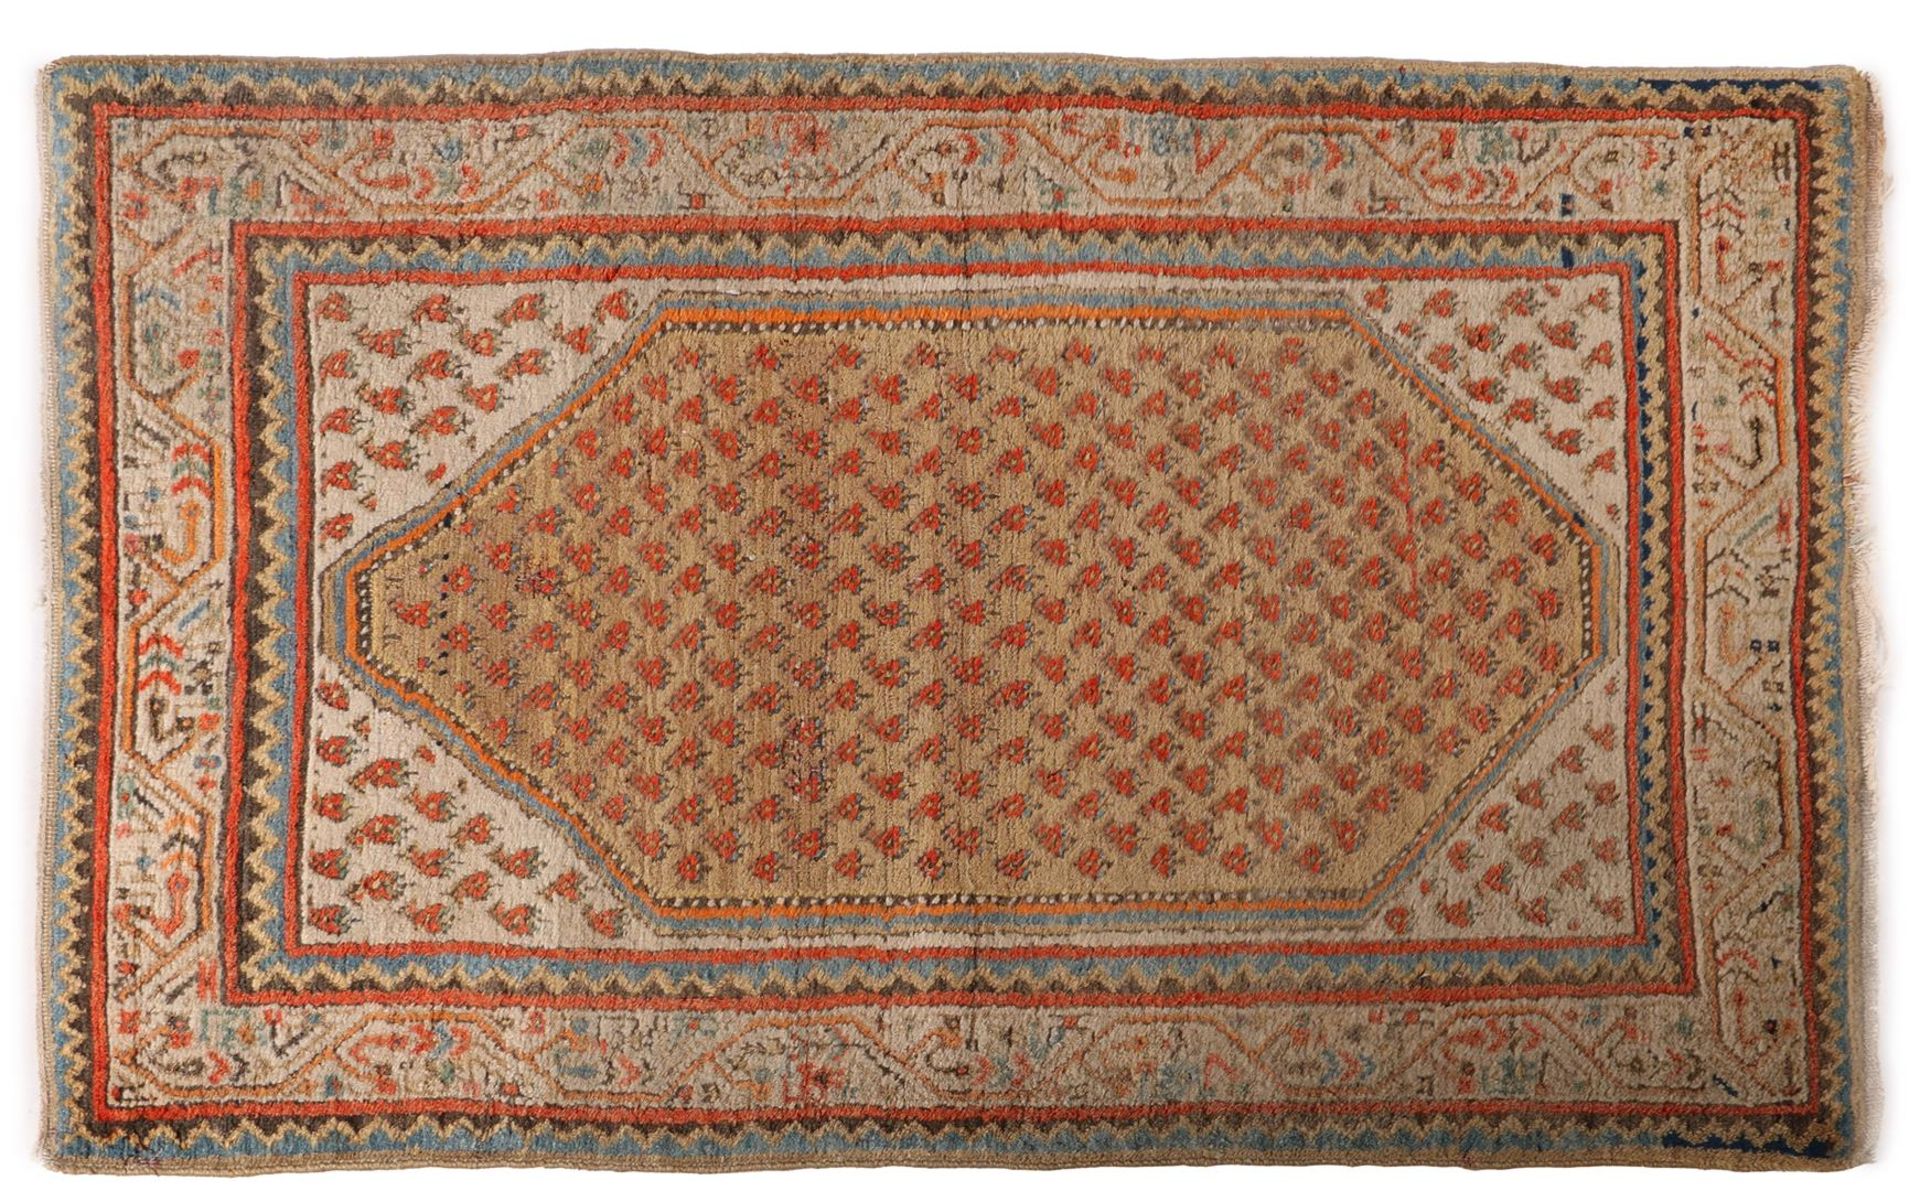 Hand-knotted oriental carpet, Mihr Sarouk